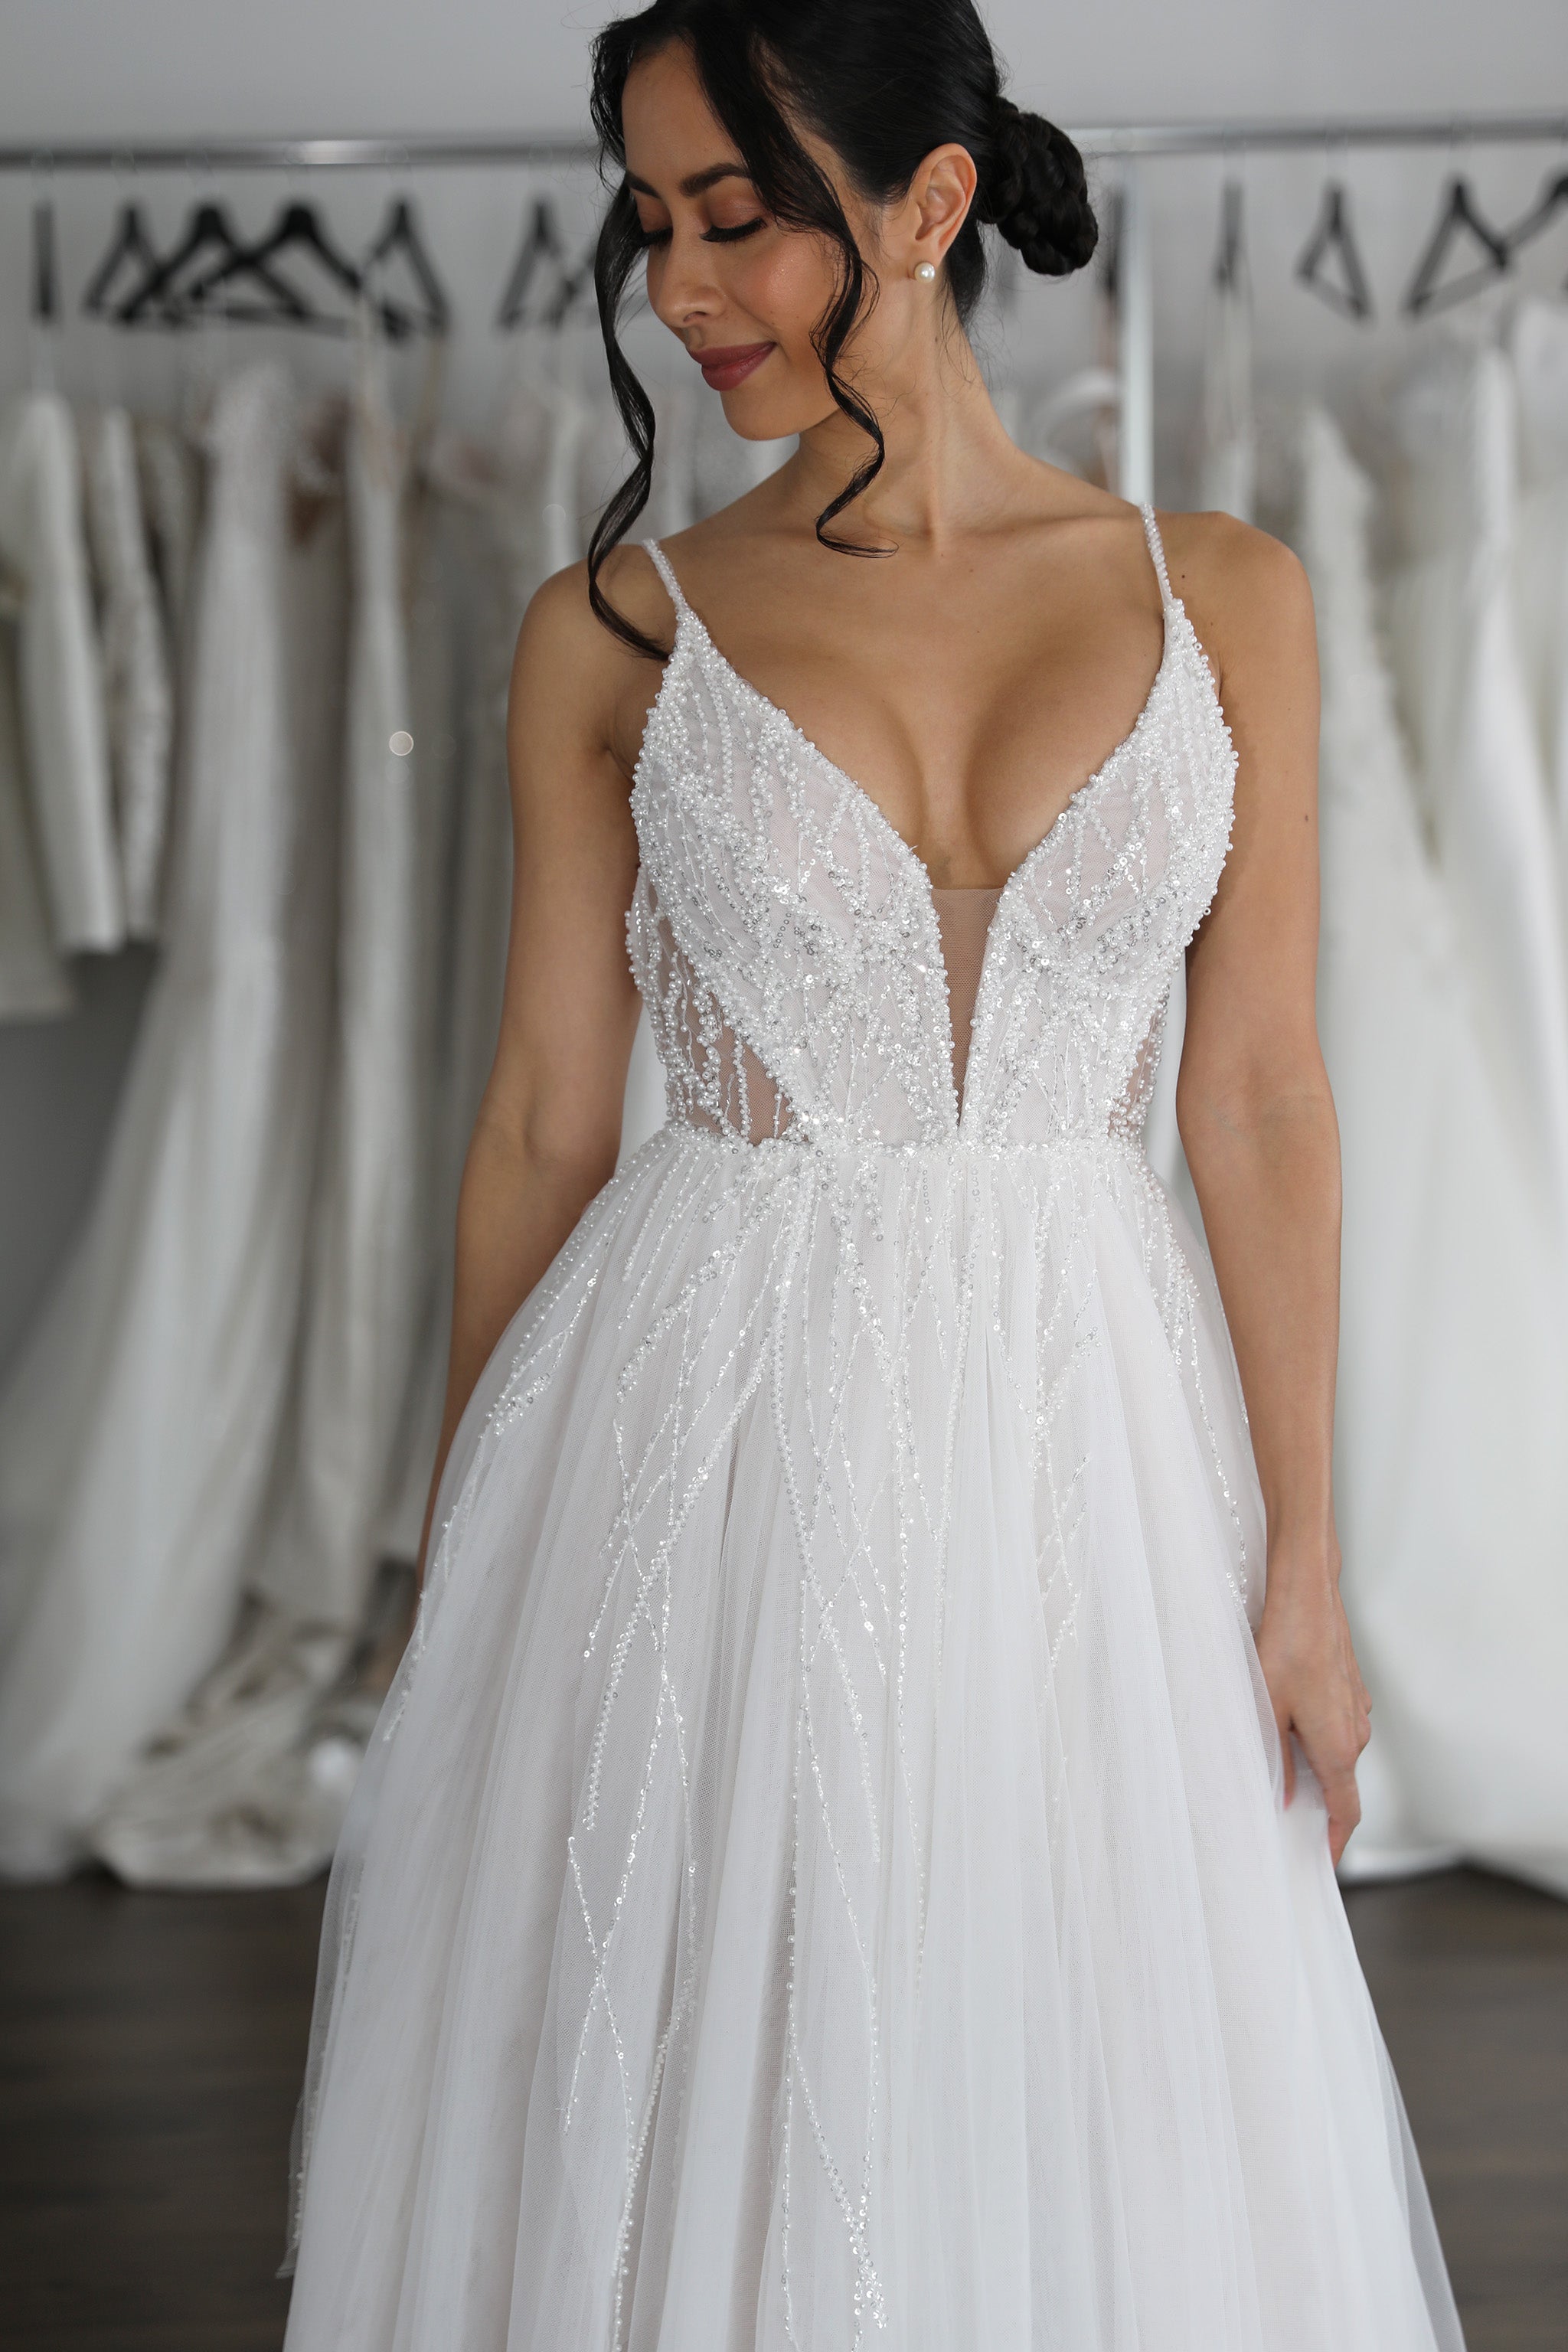 elegant lace wedding dress with deep v-cut neckline